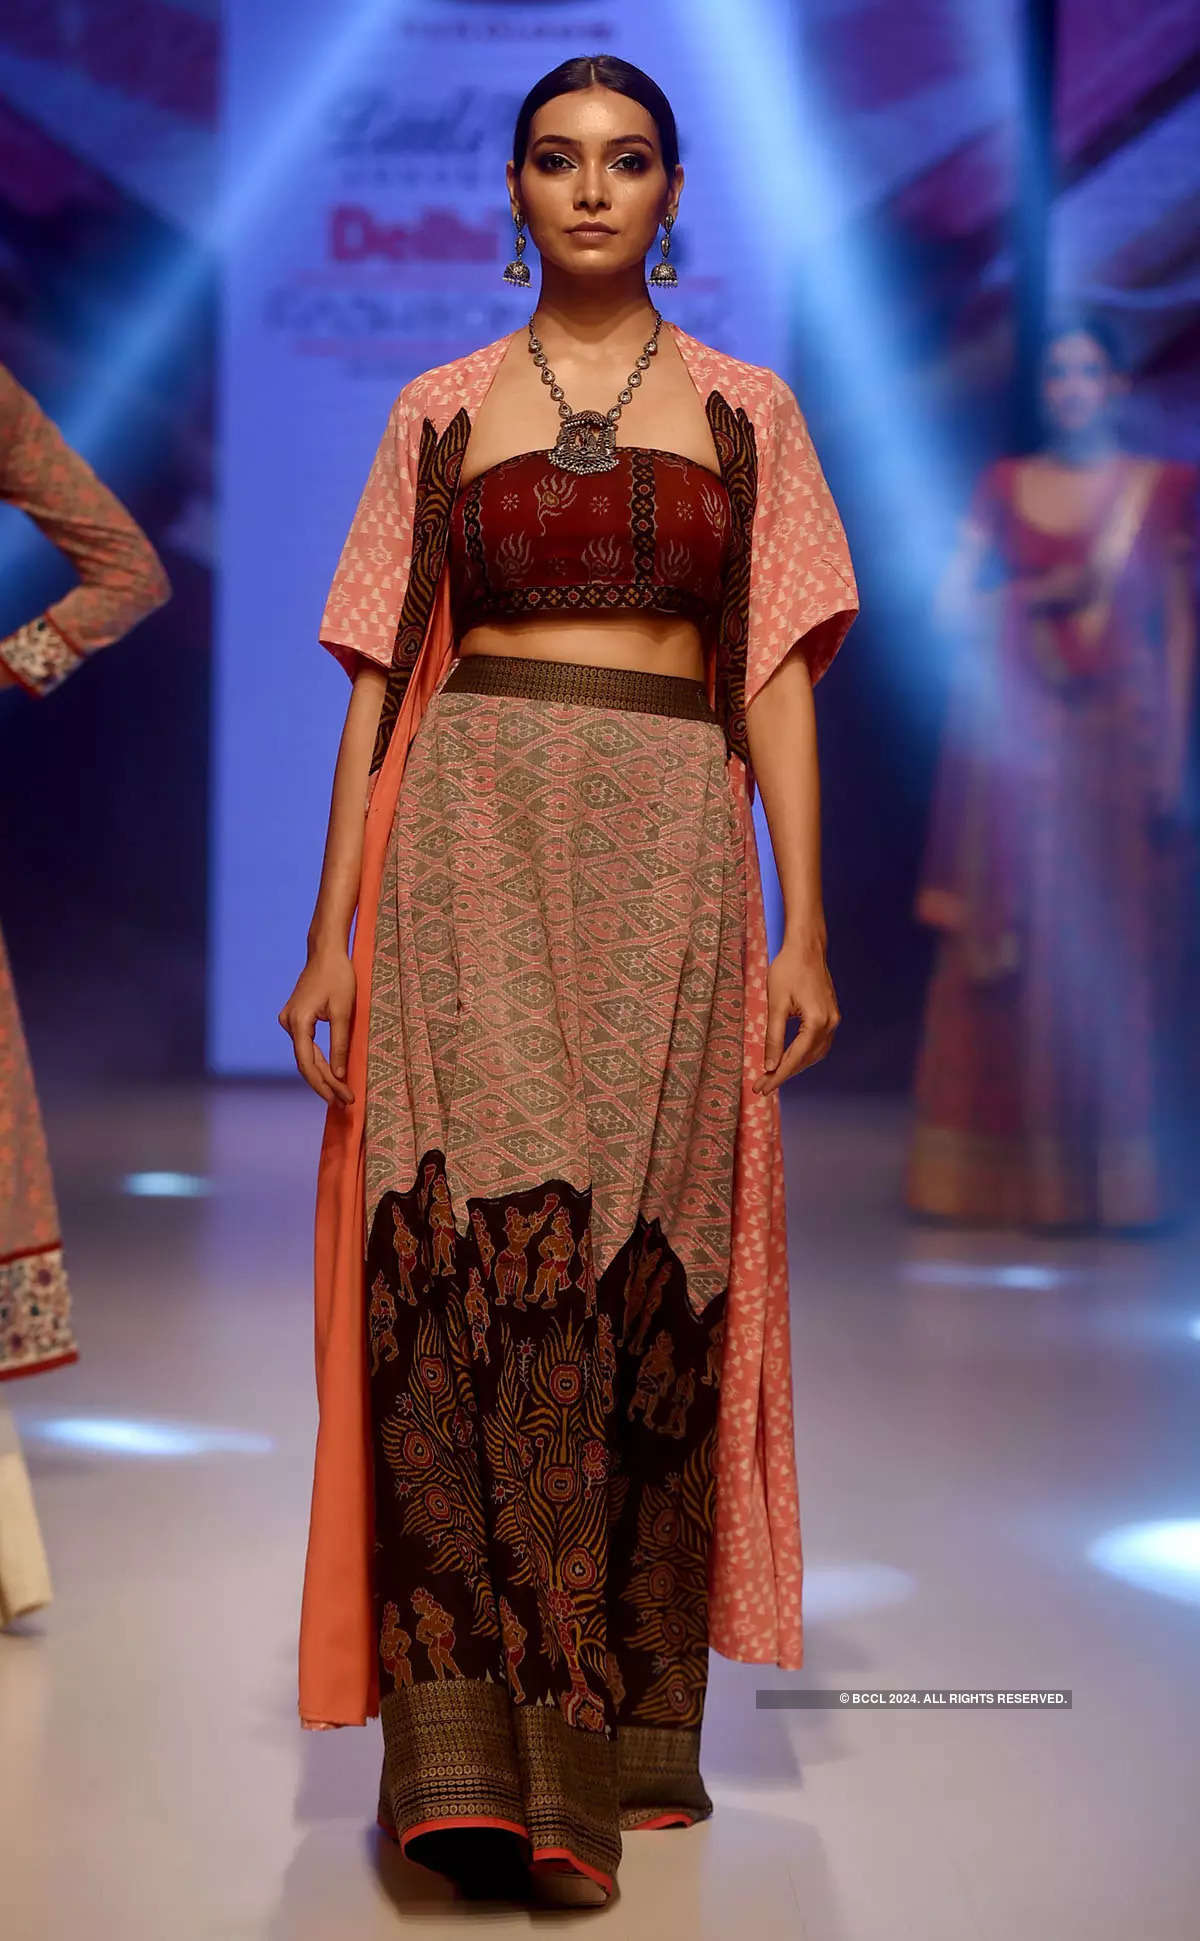 Delhi Times Fashion Week: Day 3 - Pradeep Shahari